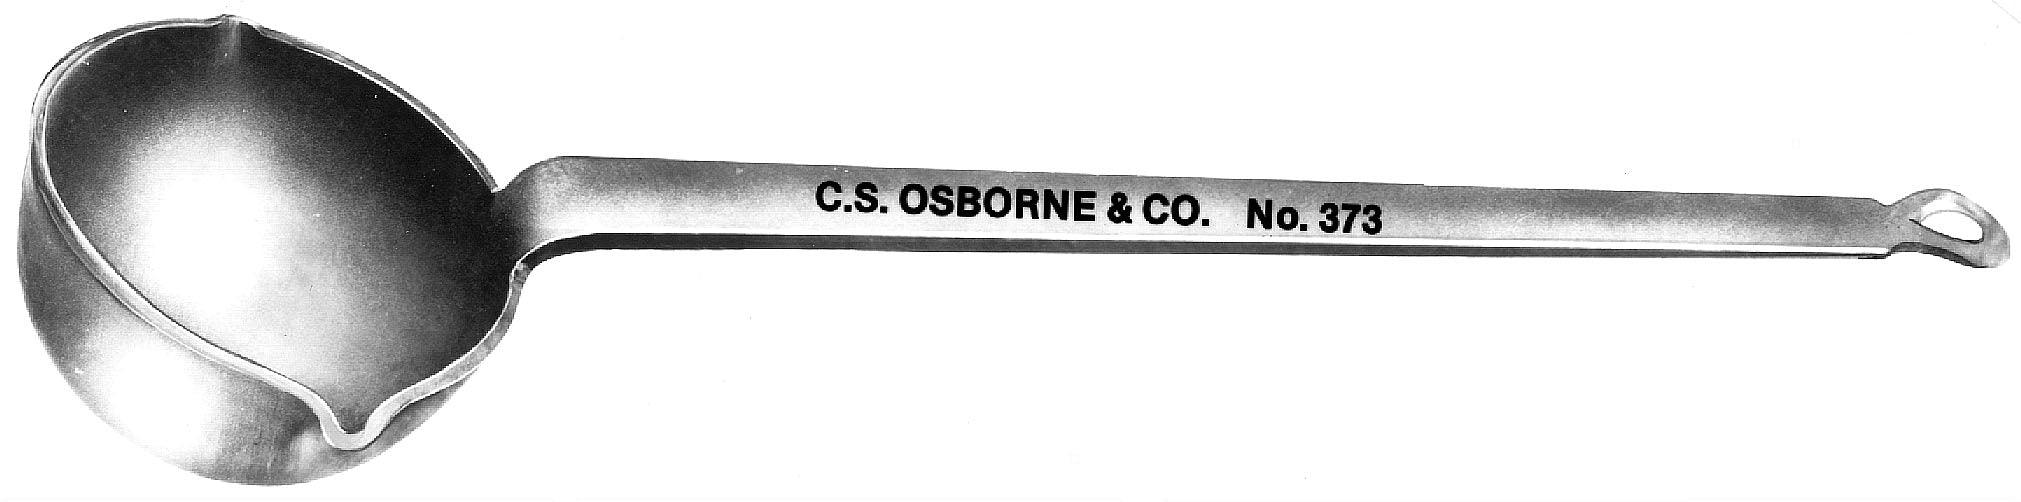 C.S. Osborne Ladle - Alan Richard Textiles, LTD C.S. Osborne